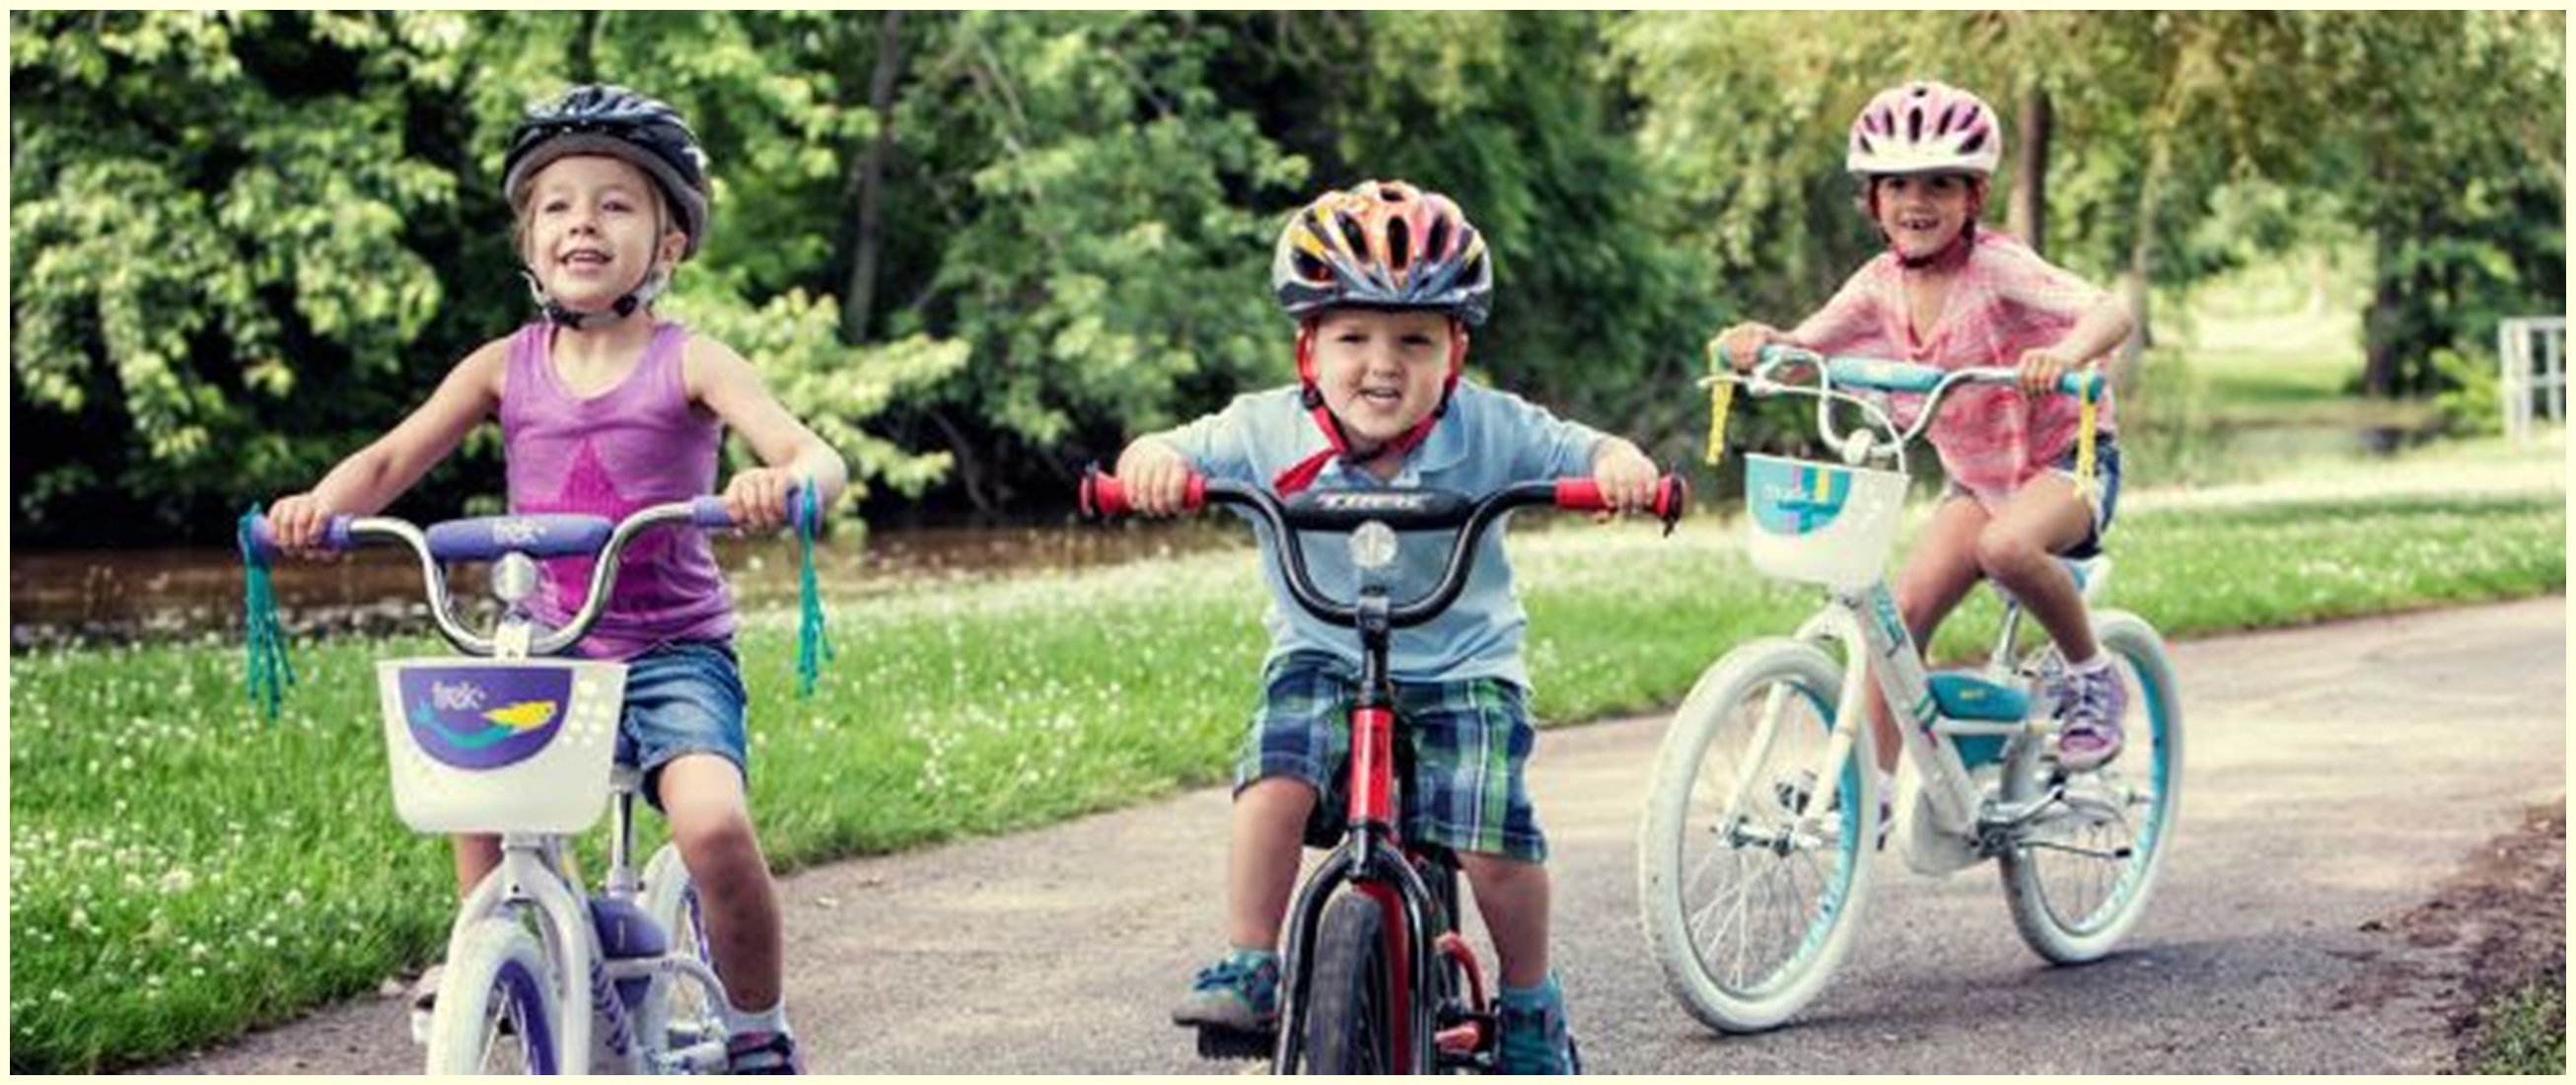 Harga sepeda  anak  Family terbaru 2021  lengkap dengan modelnya